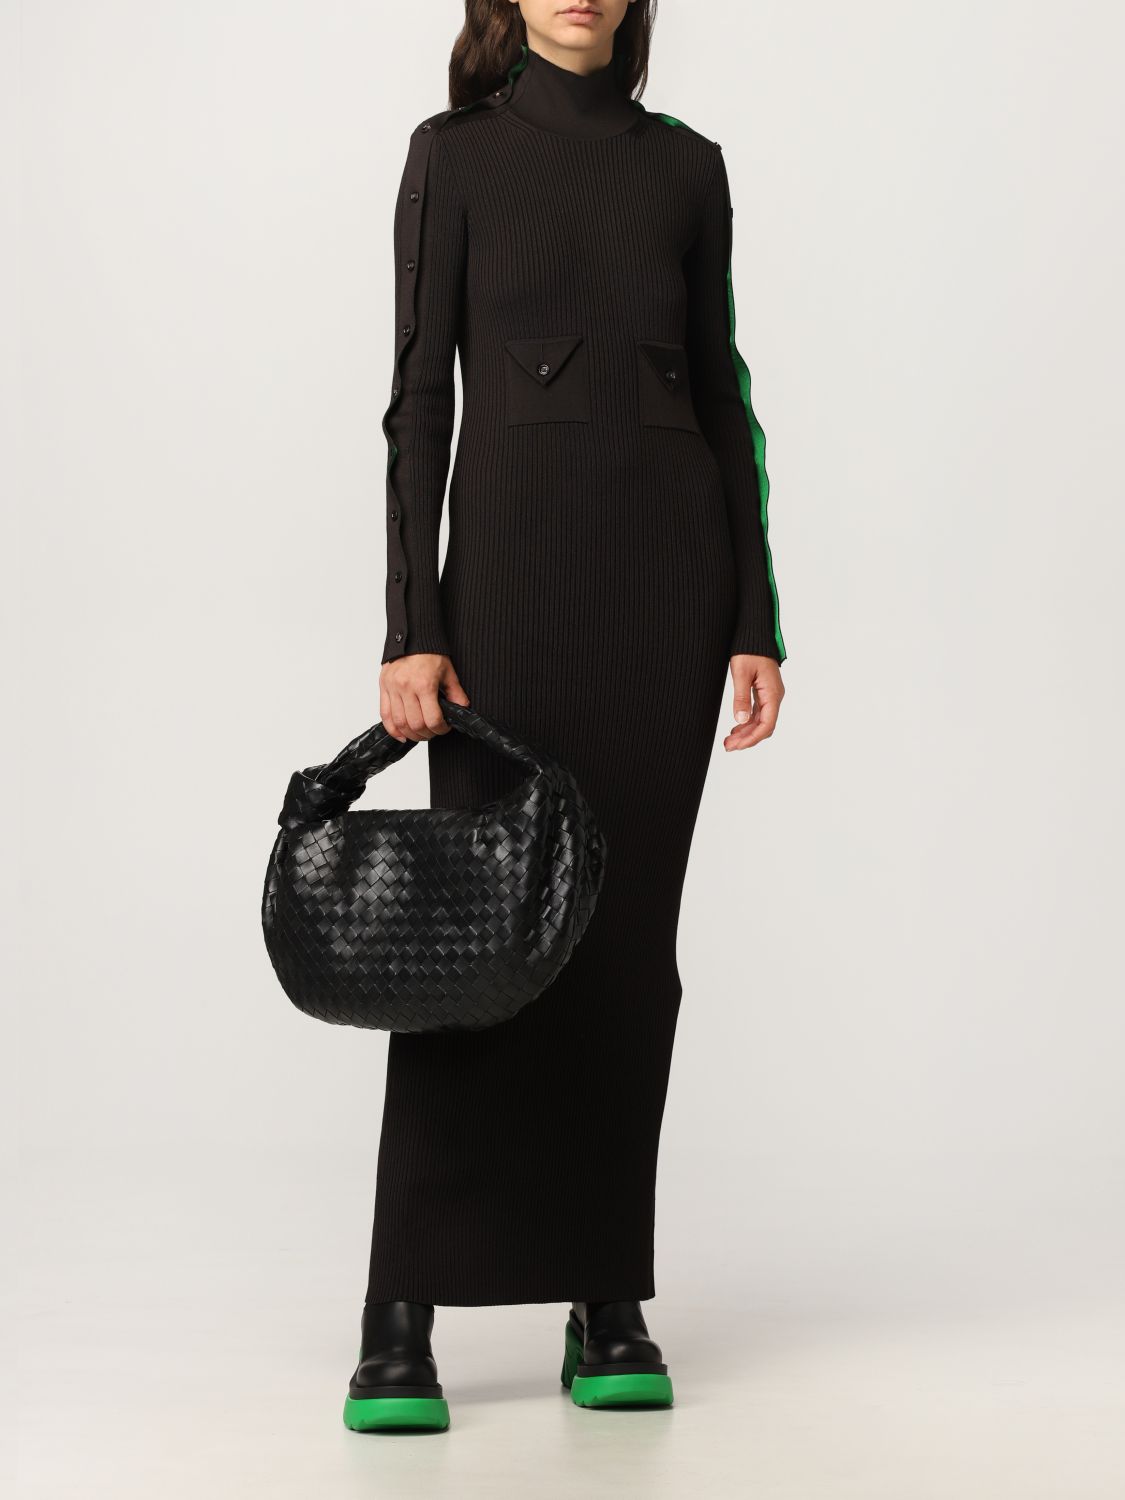 BOTTEGA VENETA: Jodi Hobo bag in woven leather - Black | Handbag ...